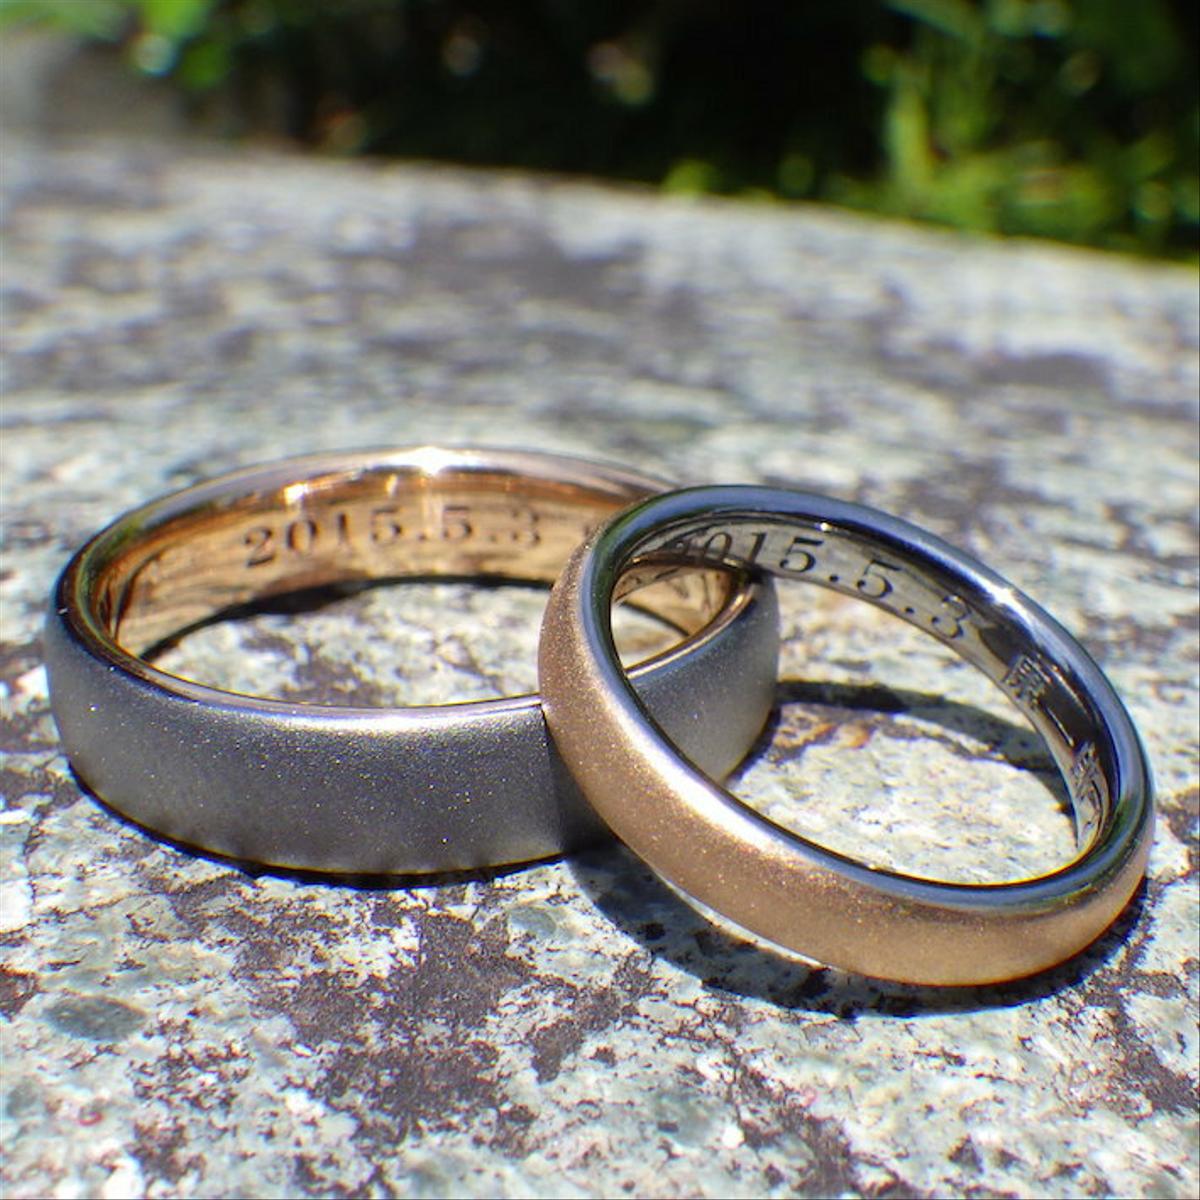 【金属アレルギー対応】 タンタルとオレンジゴールドの美しい色合わせ・結婚指輪